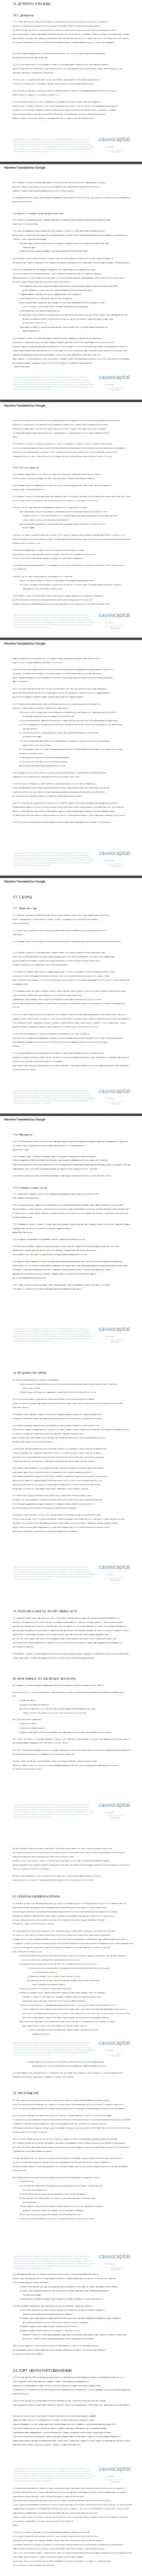 Часть 3 пользовательского соглашения forex-брокерской организации Cauvo Capital